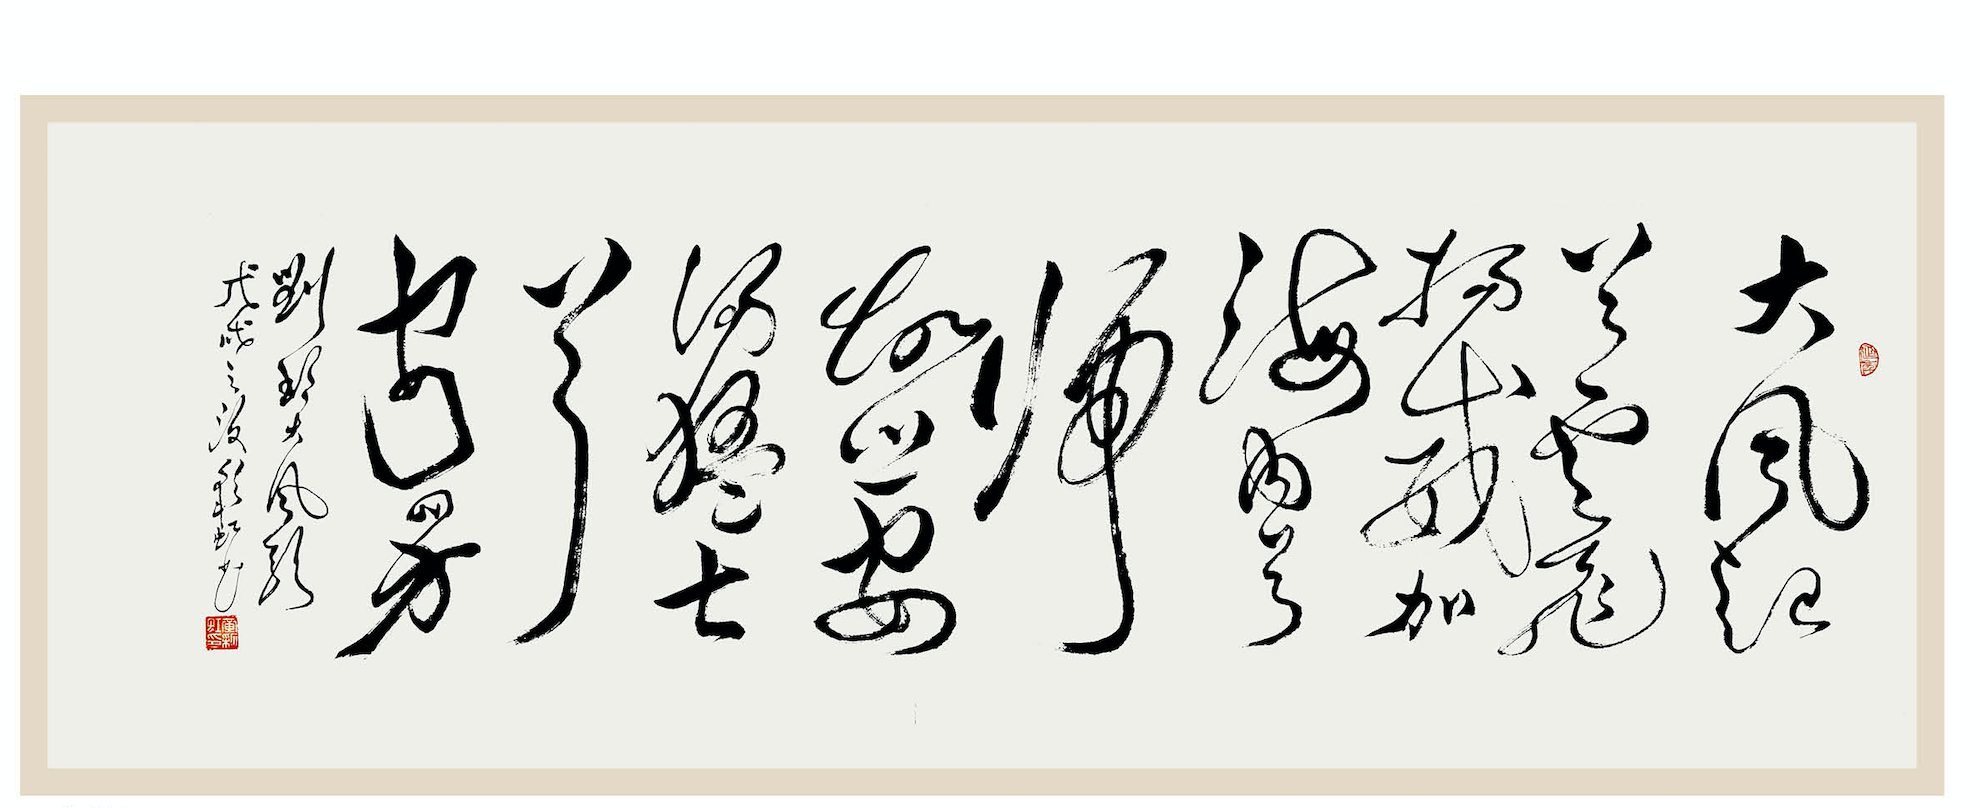 黄彩虹书法展今日在北京民族文化宫展览馆开展